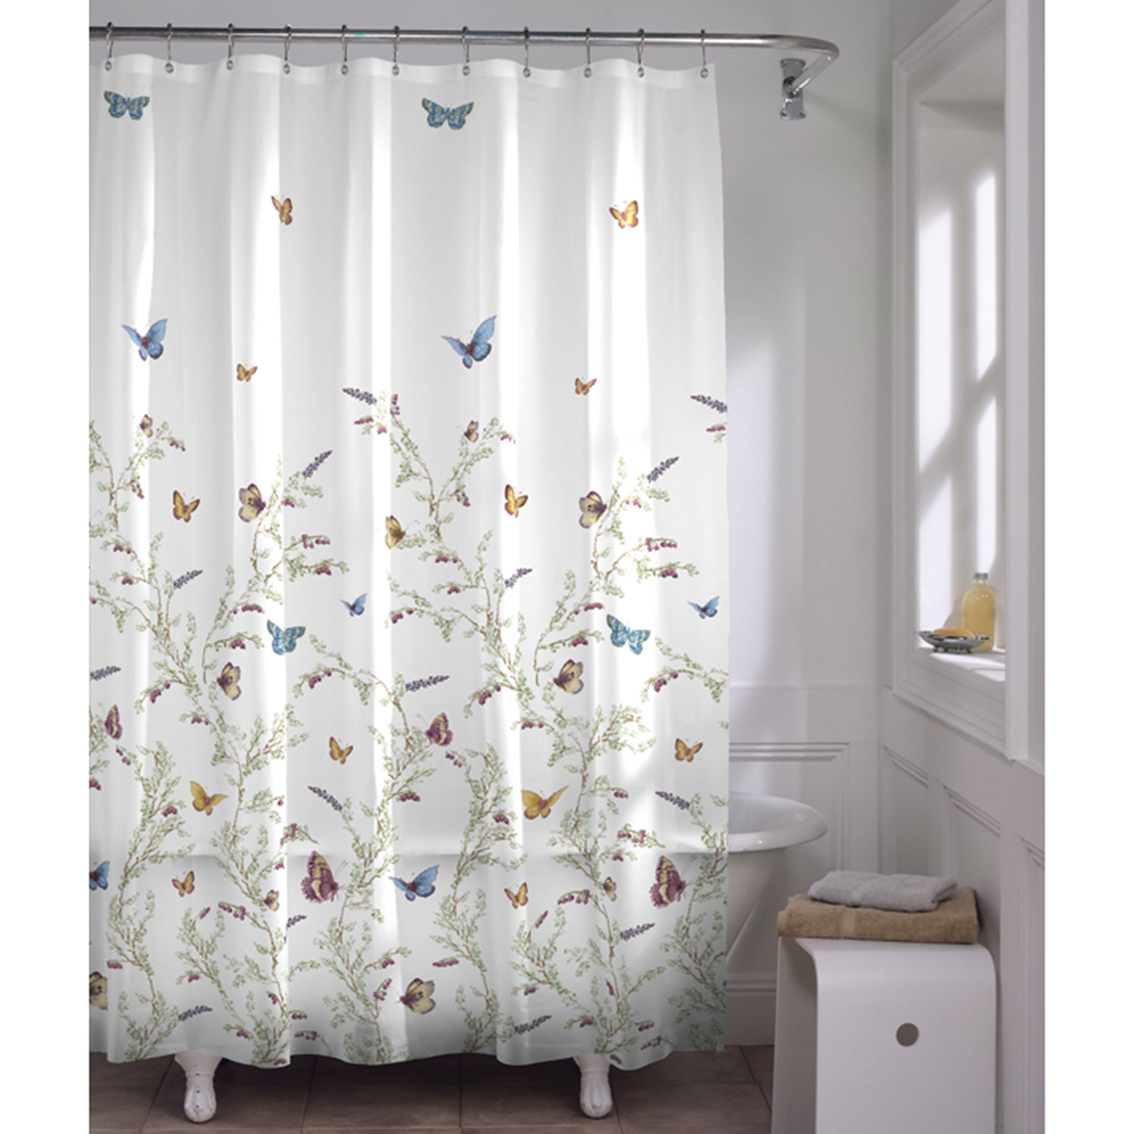 Maytex Garden Flight Peva Shower Curtain | Shower Curtains & Hooks ...